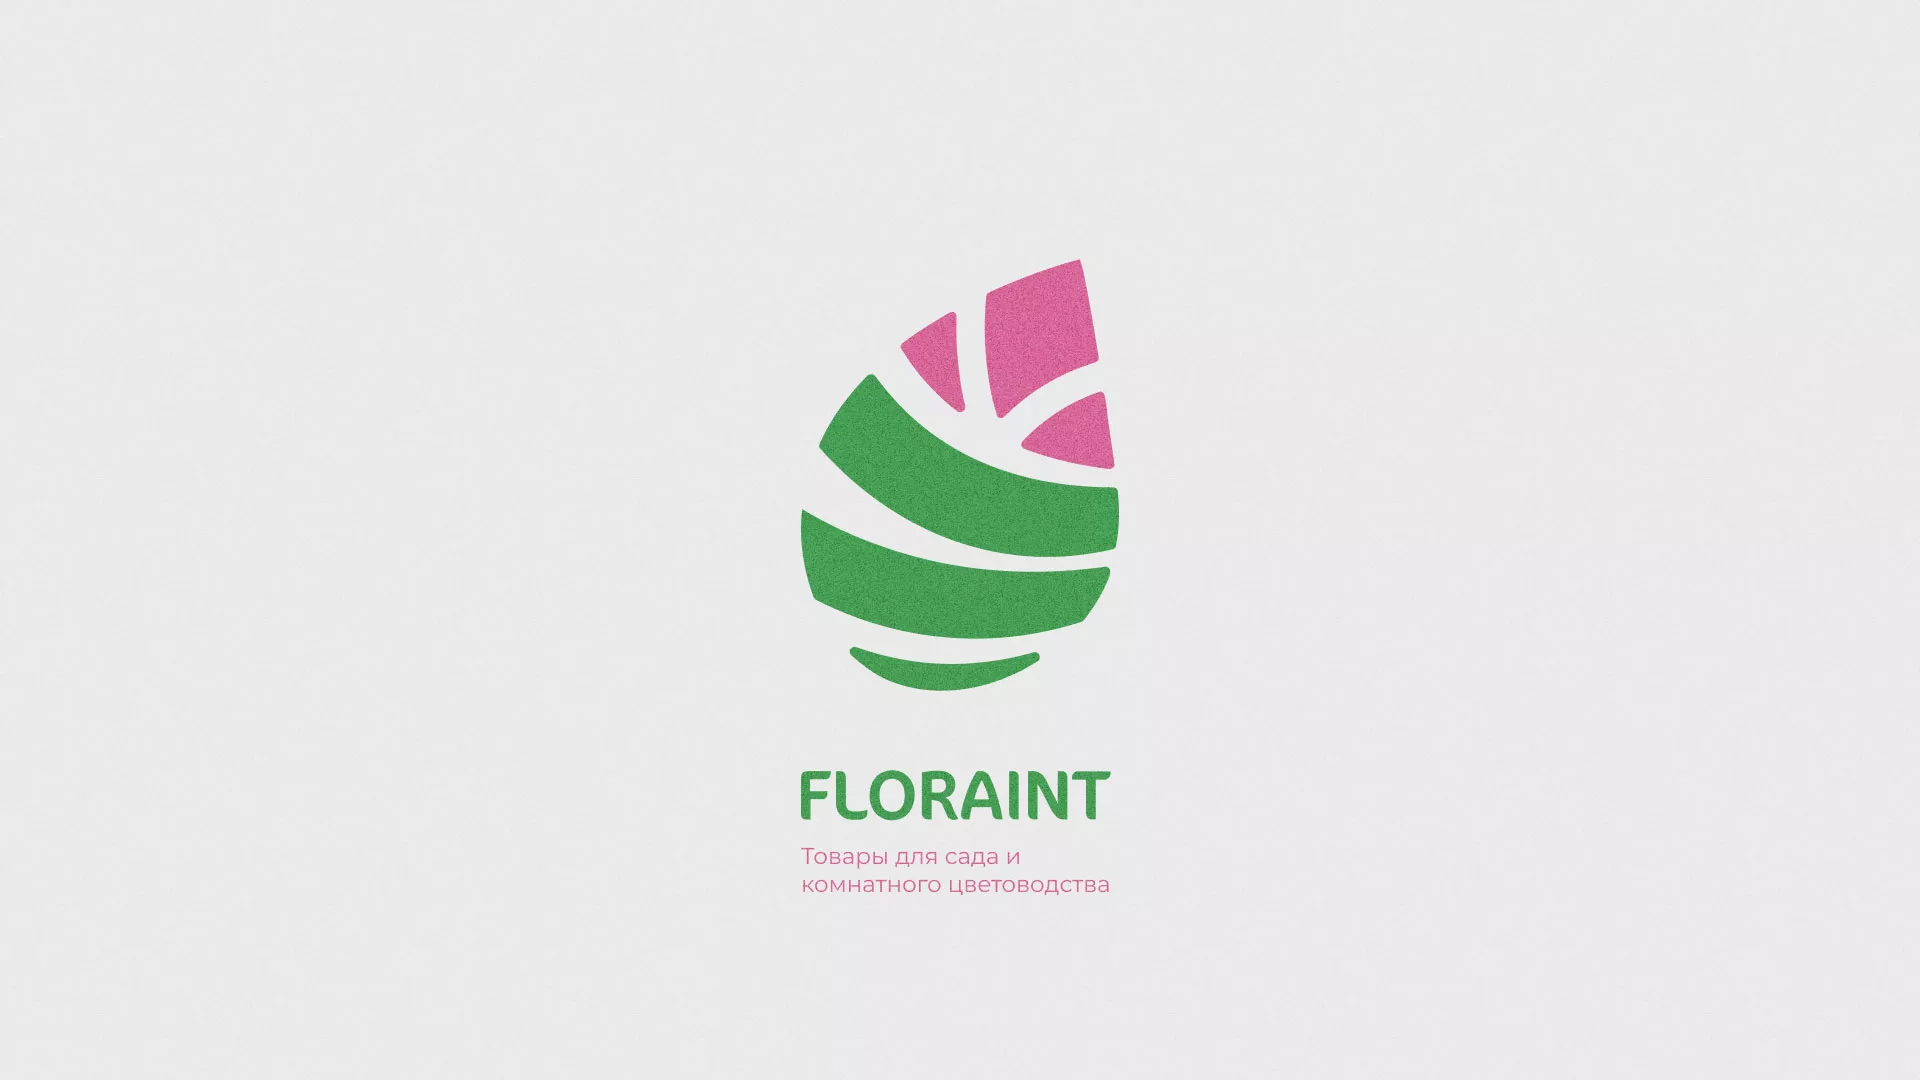 Разработка оформления профиля Instagram для магазина «Floraint» в Грязях